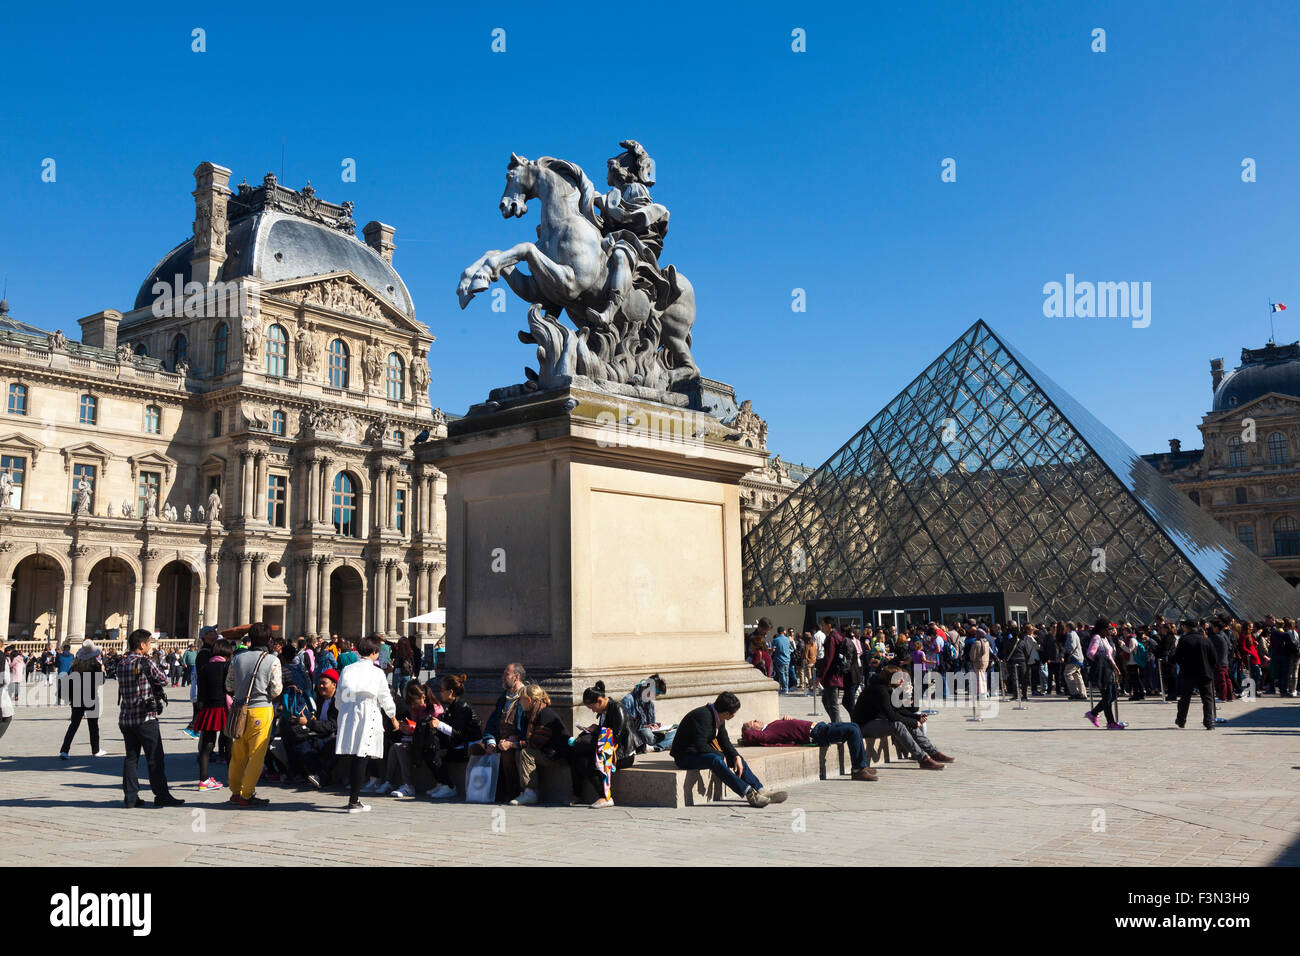 The Louvre Paris France Stock Photo